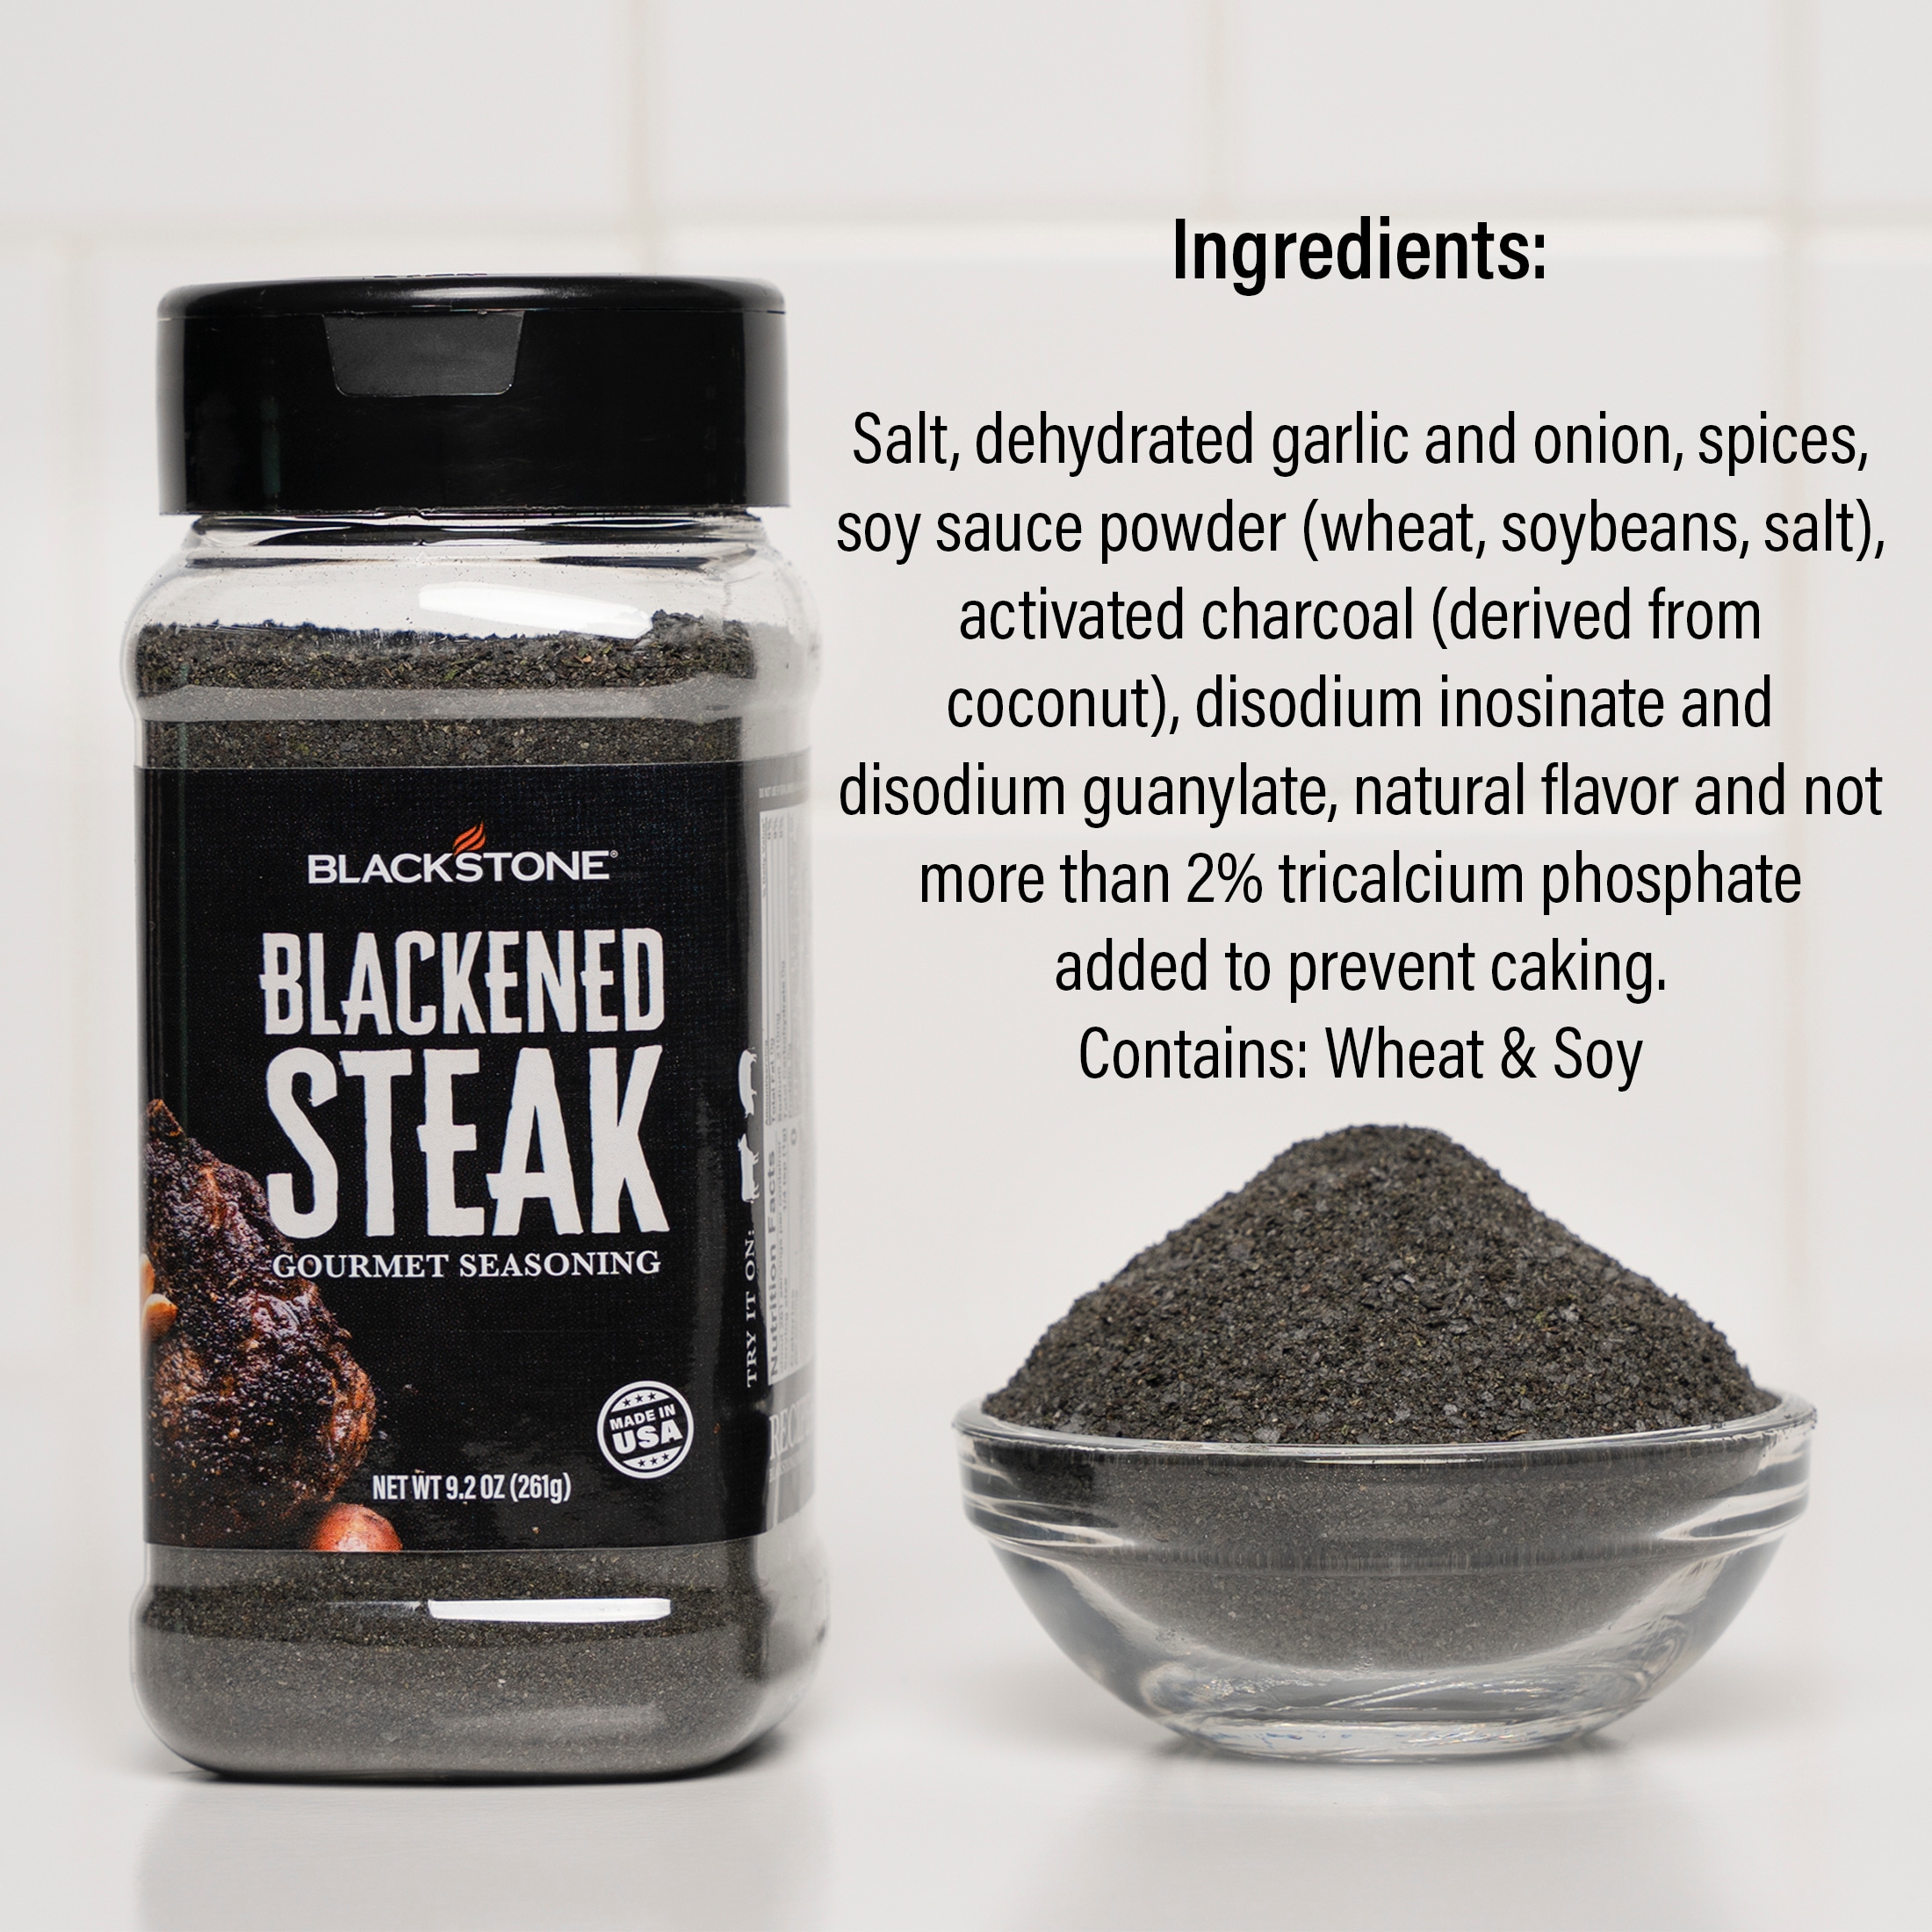 Blackstone 7.3-oz Essential Blend-All Purpose Rub/Seasoning | 4199